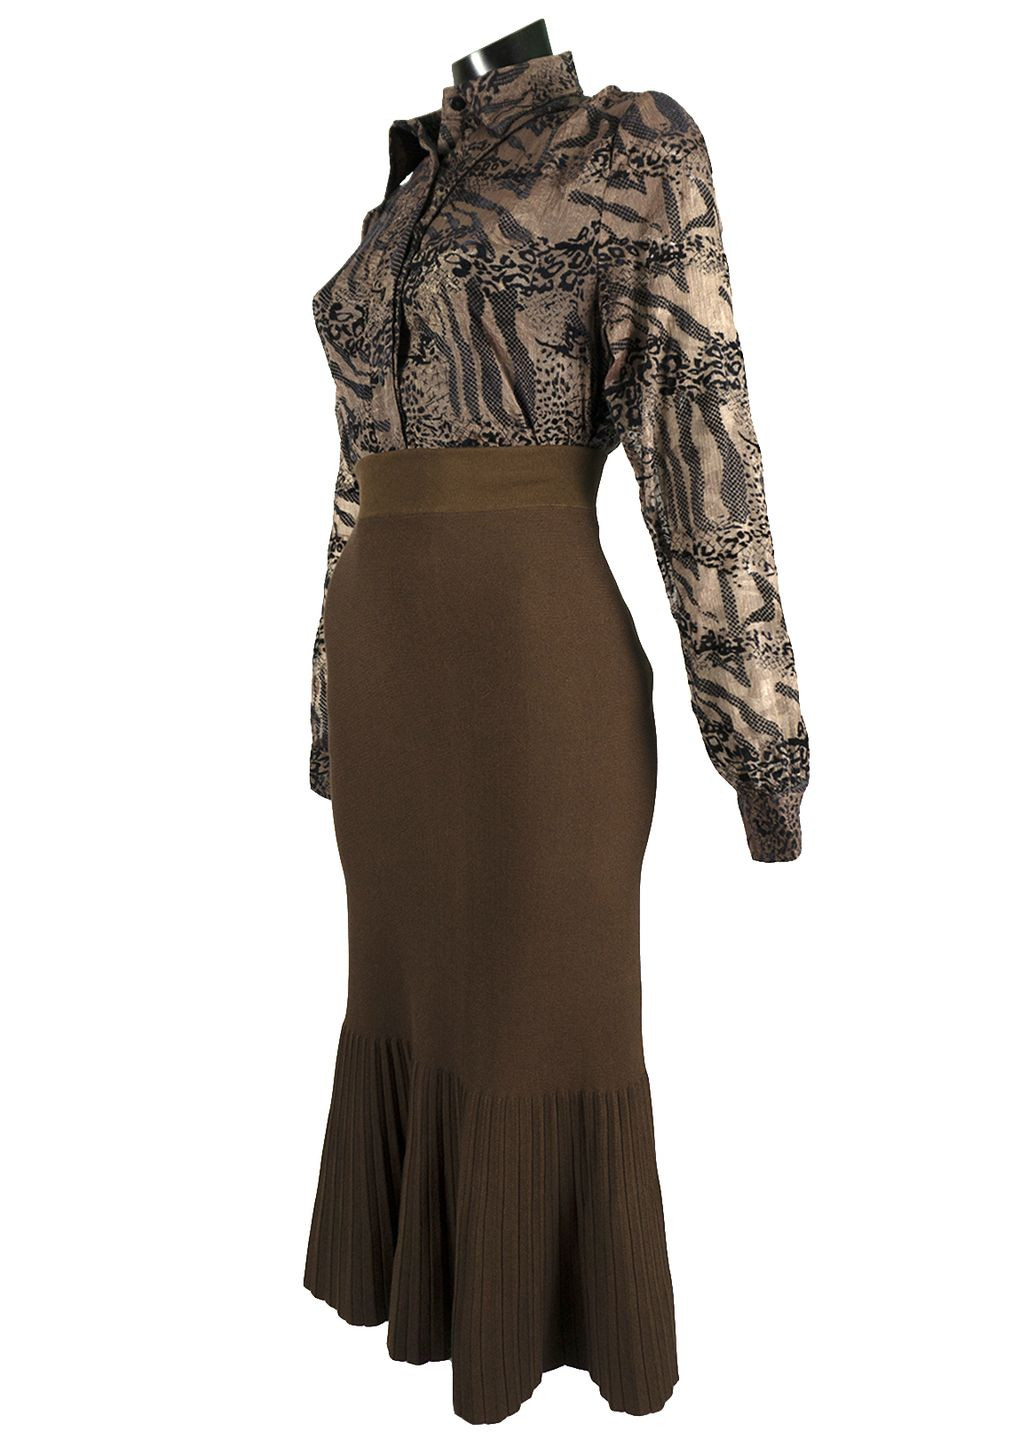 Коричневая женская блуза из органзы с баской lw-116667-13 коричневый Lowett